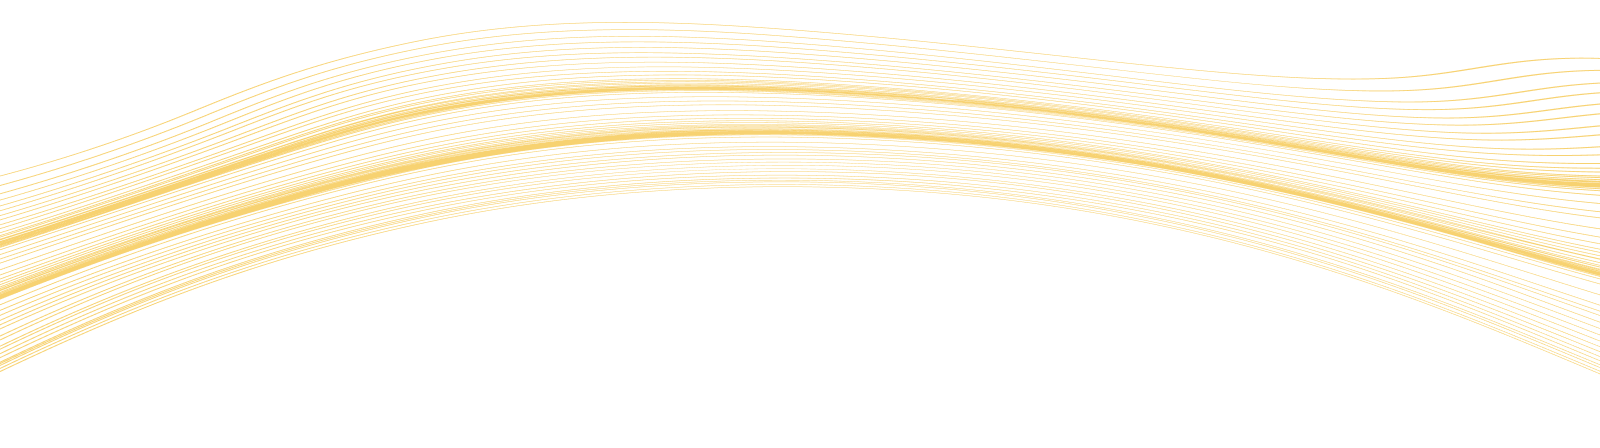 Yellow wave shaped background image